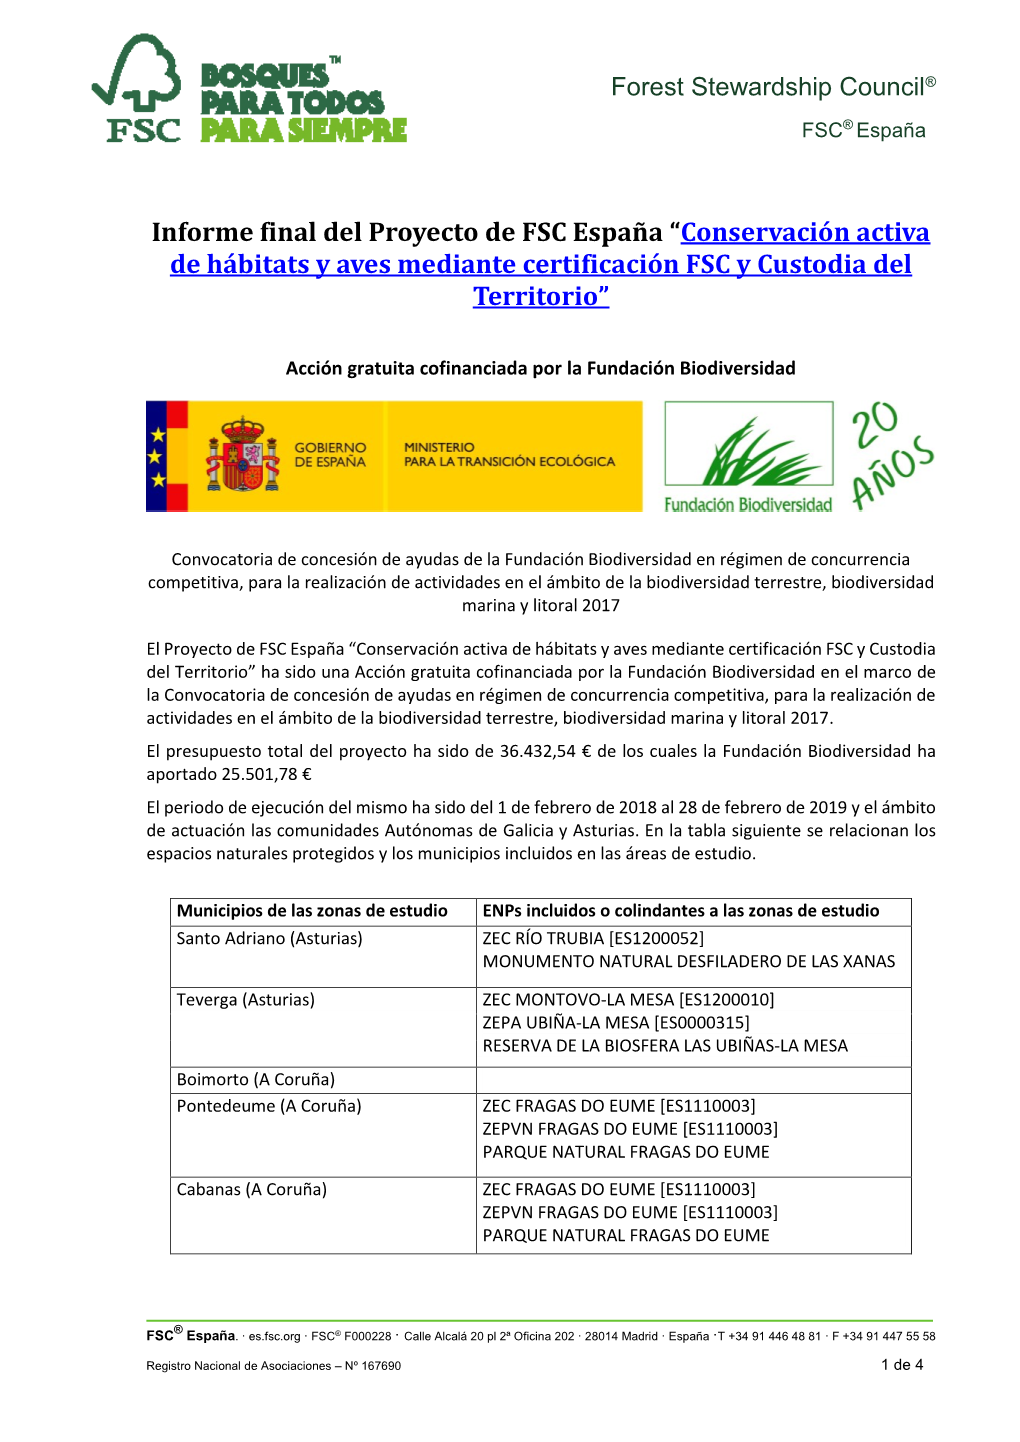 Informe Final Del Proyecto De FSC España “Conservación Activa De Hábitats Y Aves Mediante Certificación FSC Y Custodia Del Territorio”